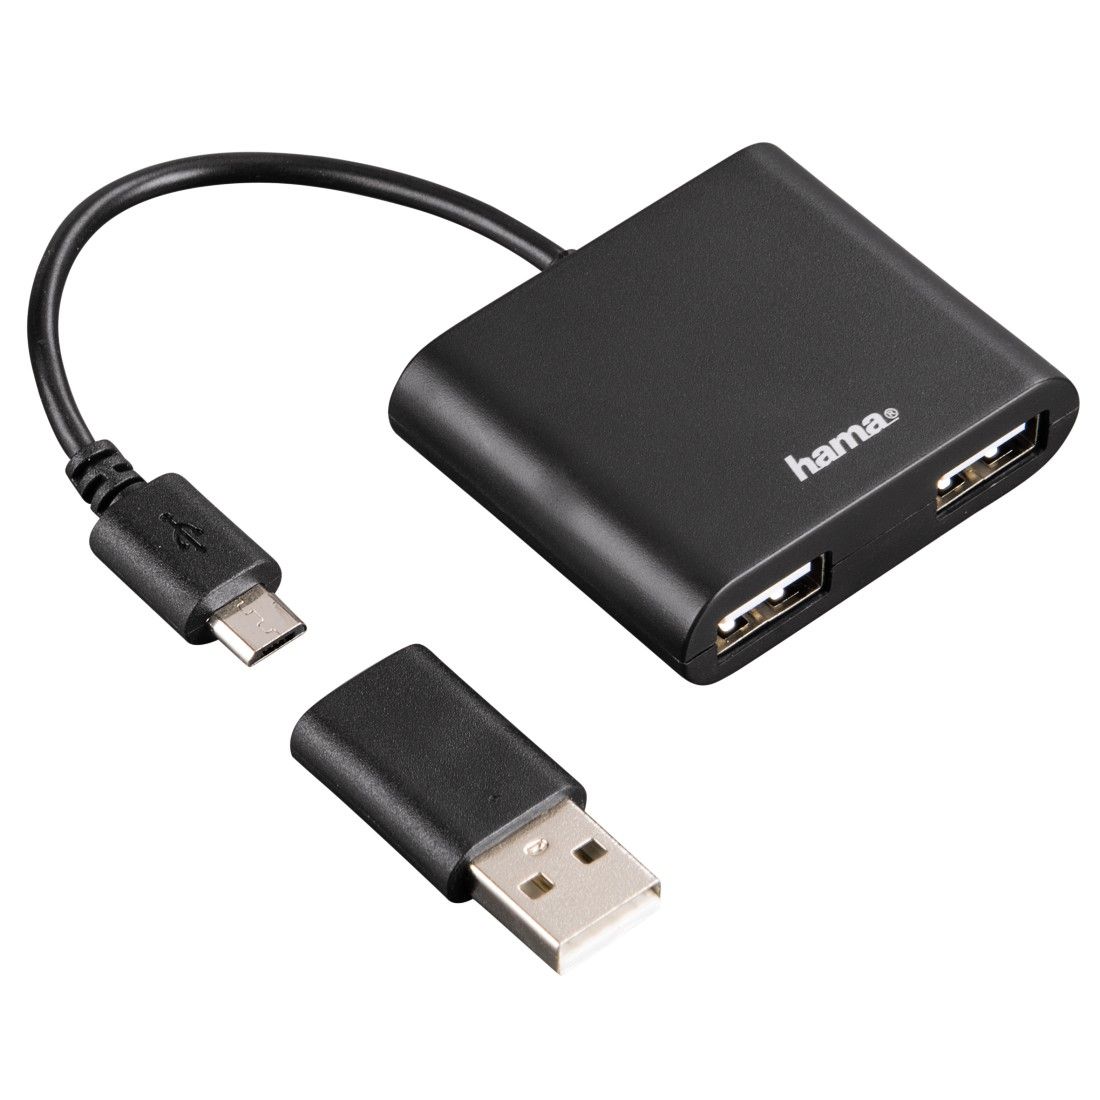  Adaptor USB Hama 54140, 2.0, 2 porturi, OTG, Negru 